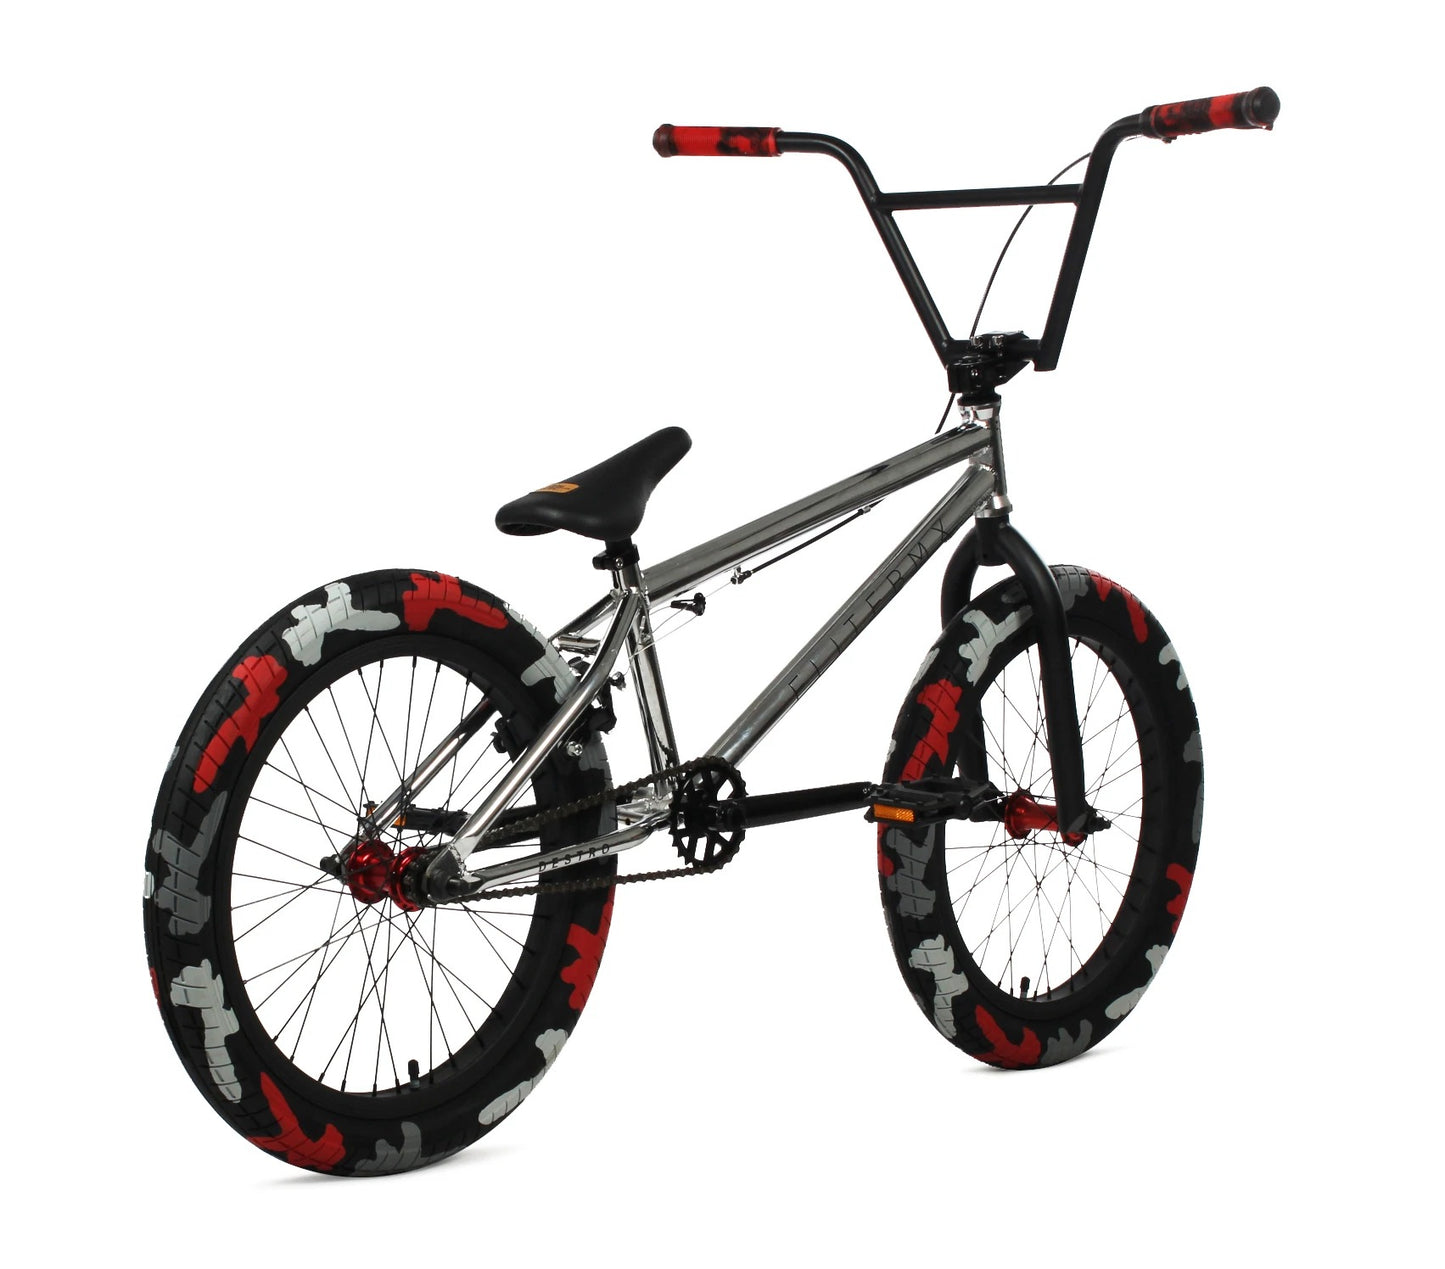 Destro BMX Bike - Chrome Camo | Elite BMX Destro Bikes | Desto Bike | Elite BMX Bike | BMX Bikes | Elite Bikes | Affordable Bikes | Affordable BMX Bikes | Bike Lovers USA